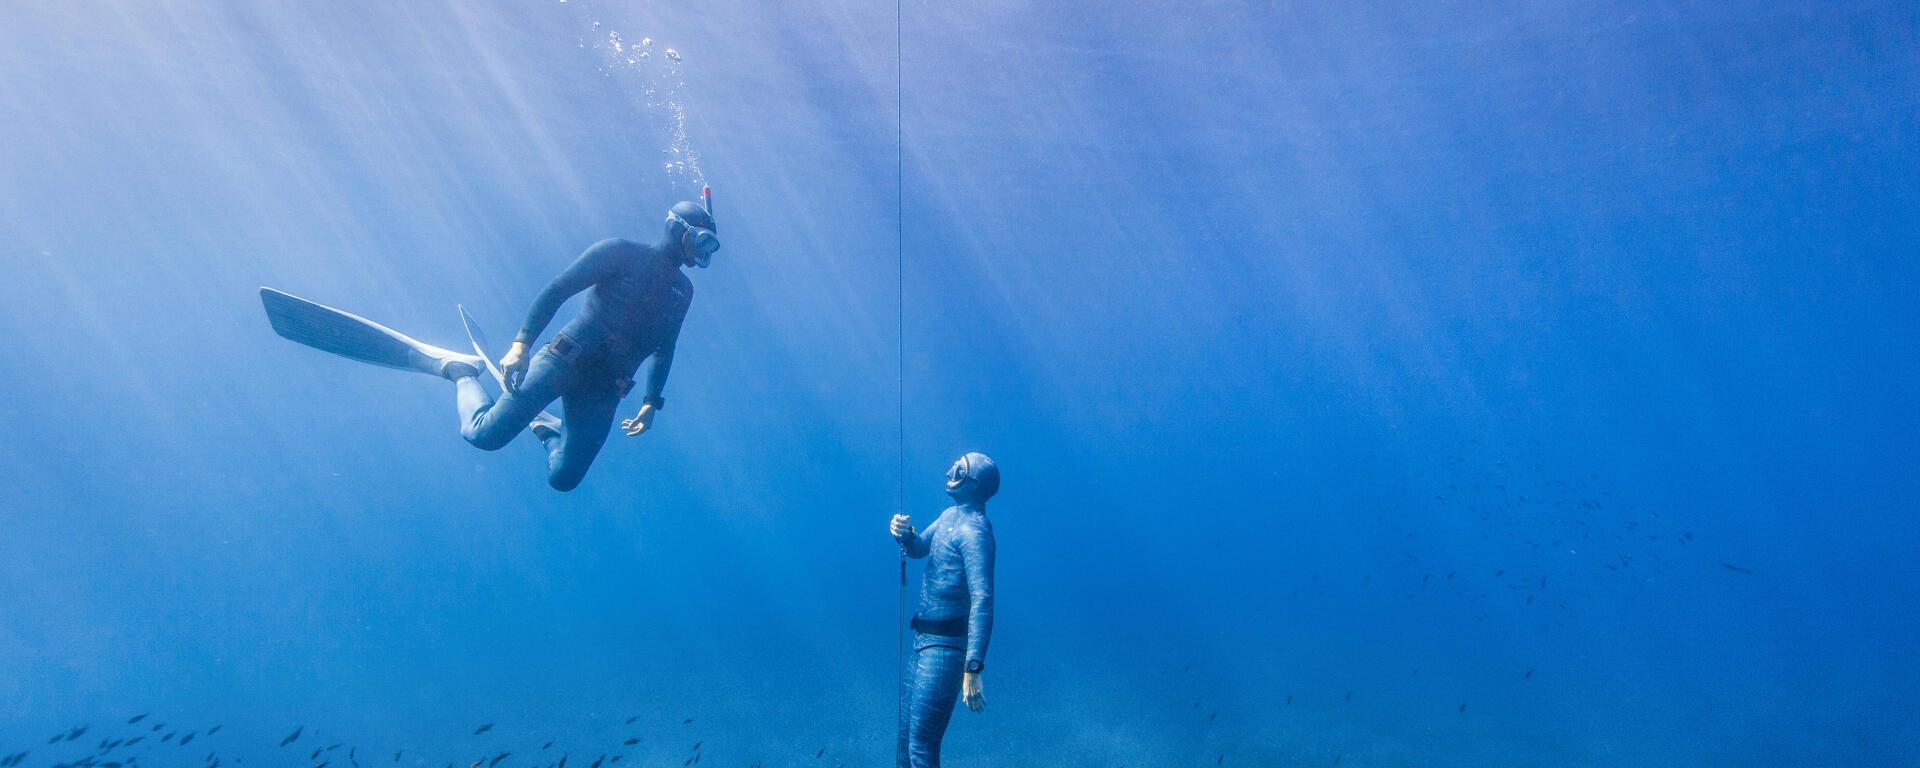 Apnée freediving : la discipline atypique et méconnue à découvrir